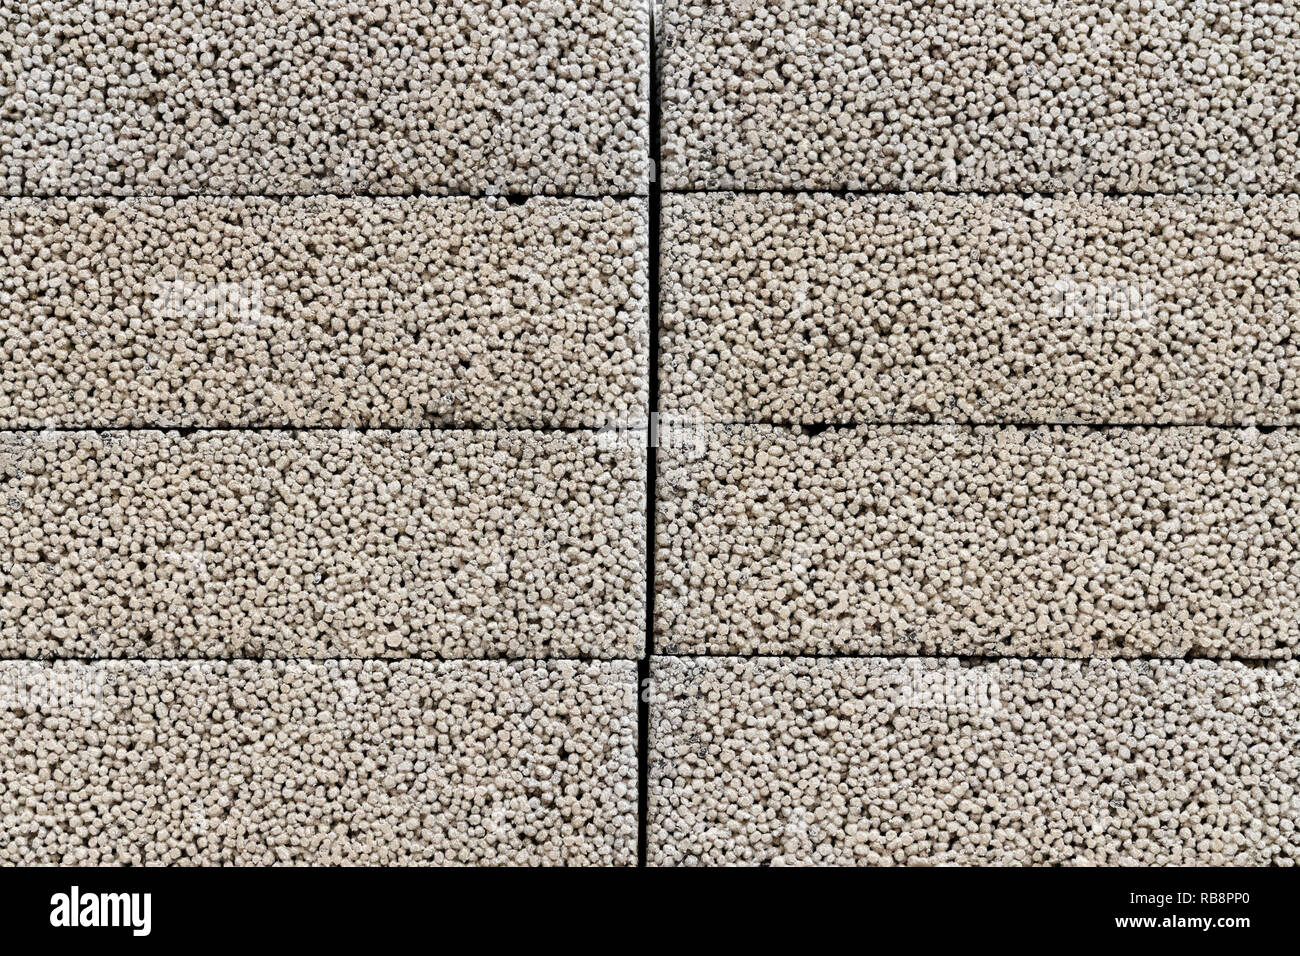 Materiale da costruzione - calcestruzzo leggero - calcestruzzo leggero Foto  stock - Alamy